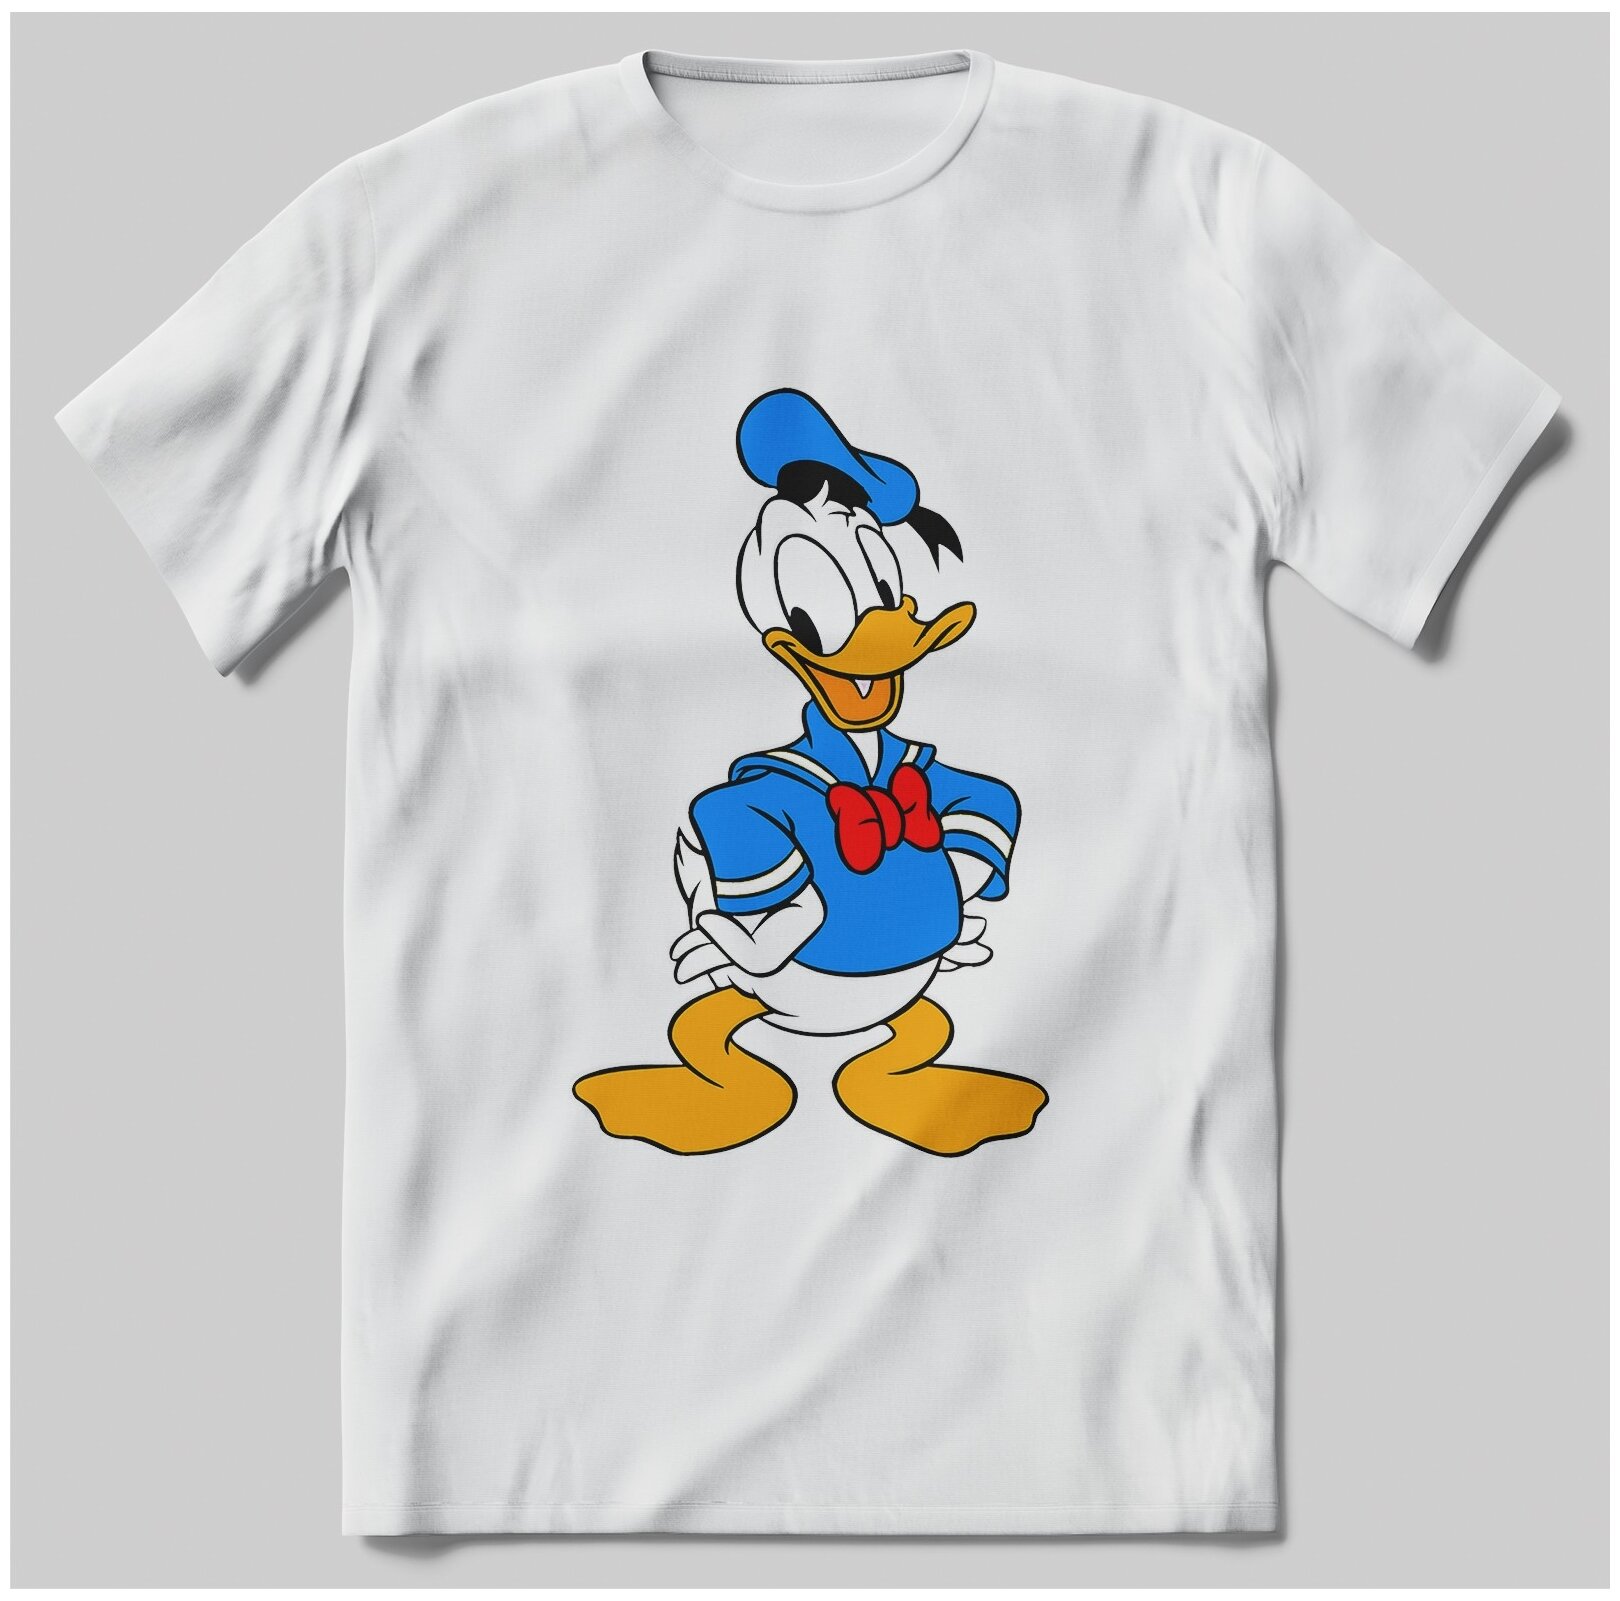 купить футболку donald duck" - Результаты поиска - Яндекс.Маркет.